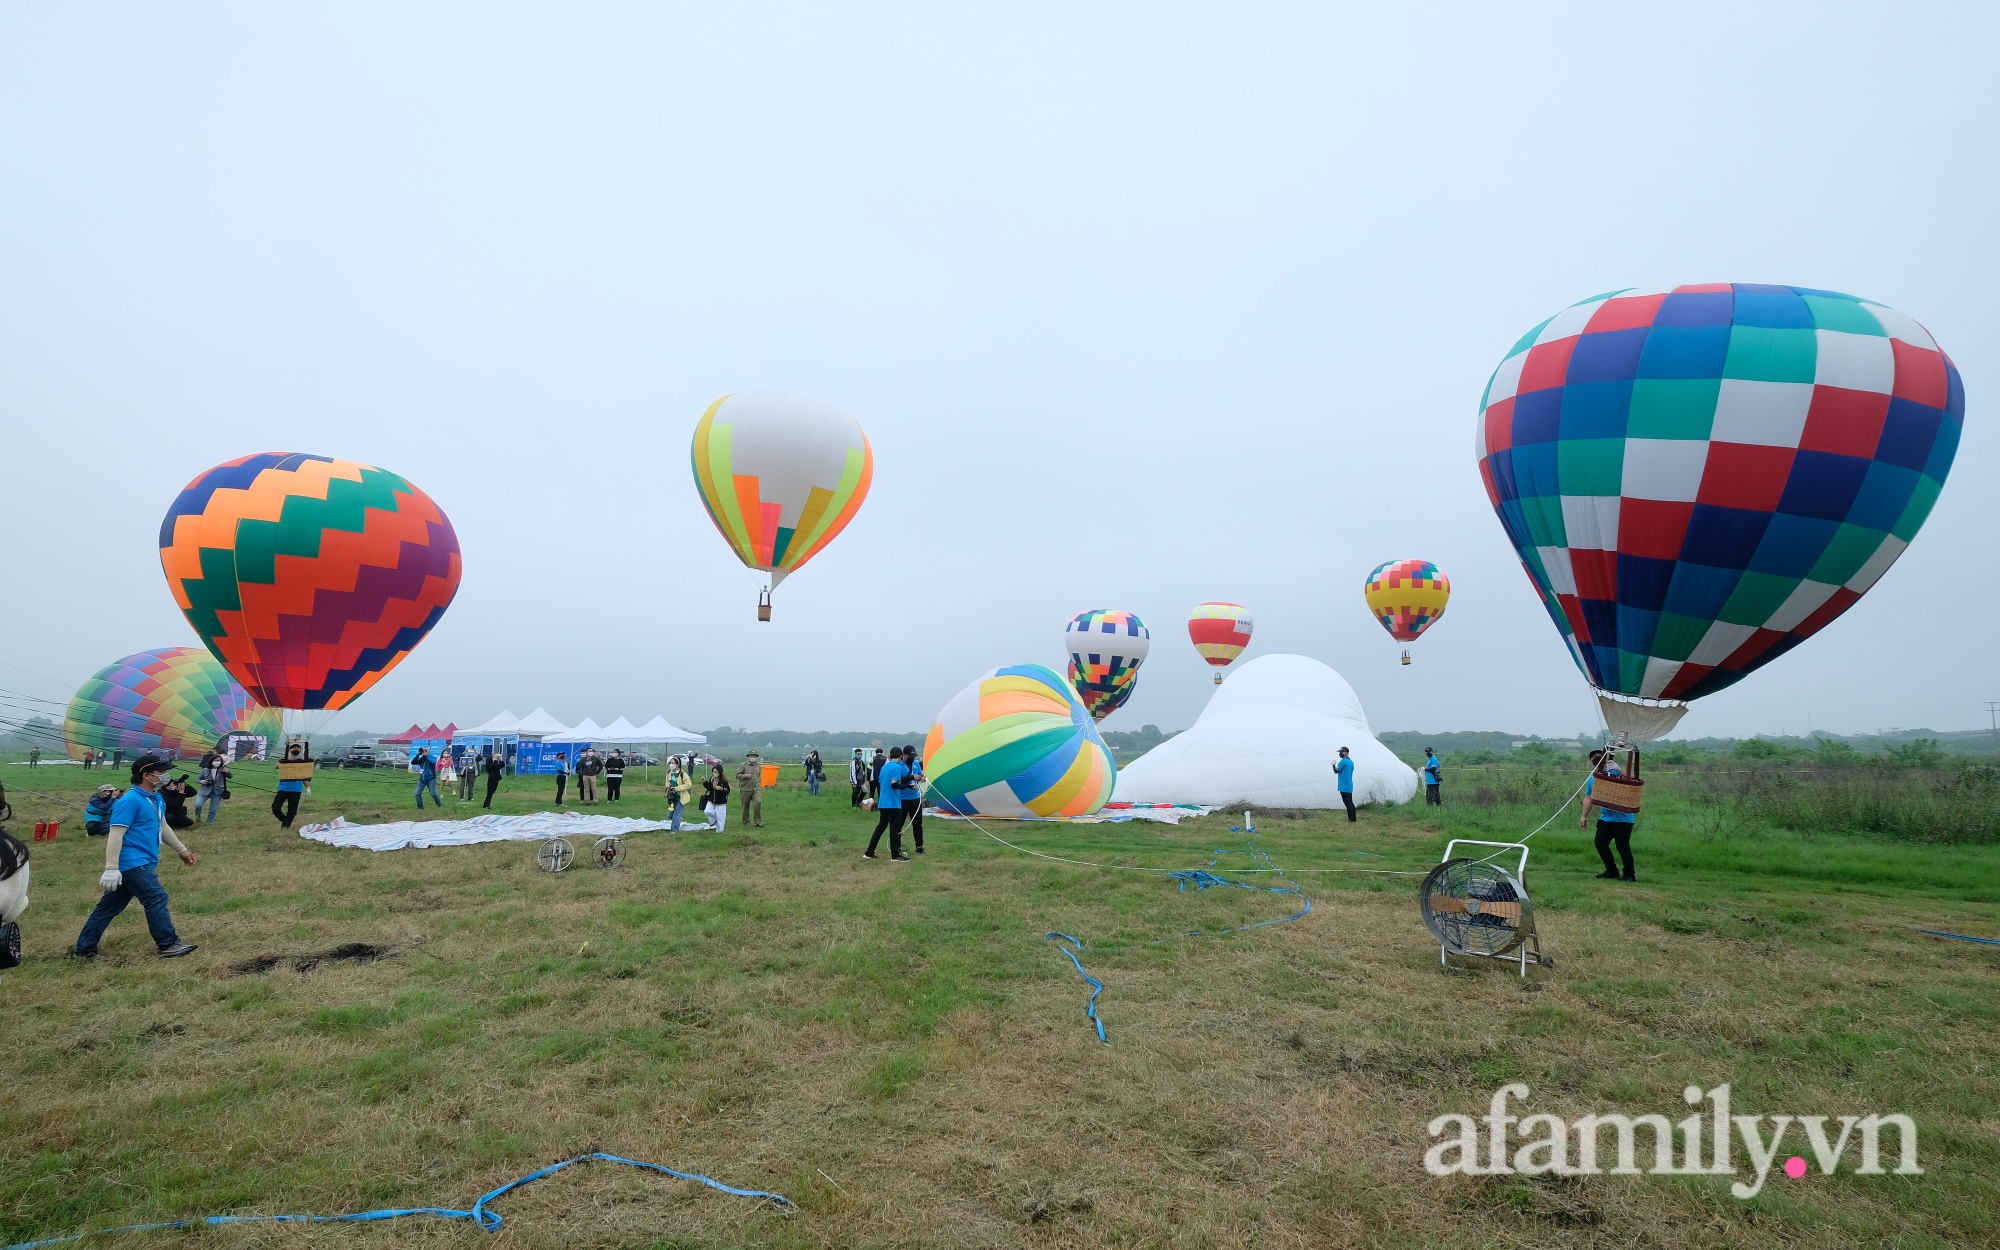 Lần đầu tiên tổ chức Ngày hội khinh khí cầu tại Hà Nội: Nhanh chân đến để trải nghiệm khoảnh khắc hiếm có ngắm thành phố từ trên cao - Ảnh 4.